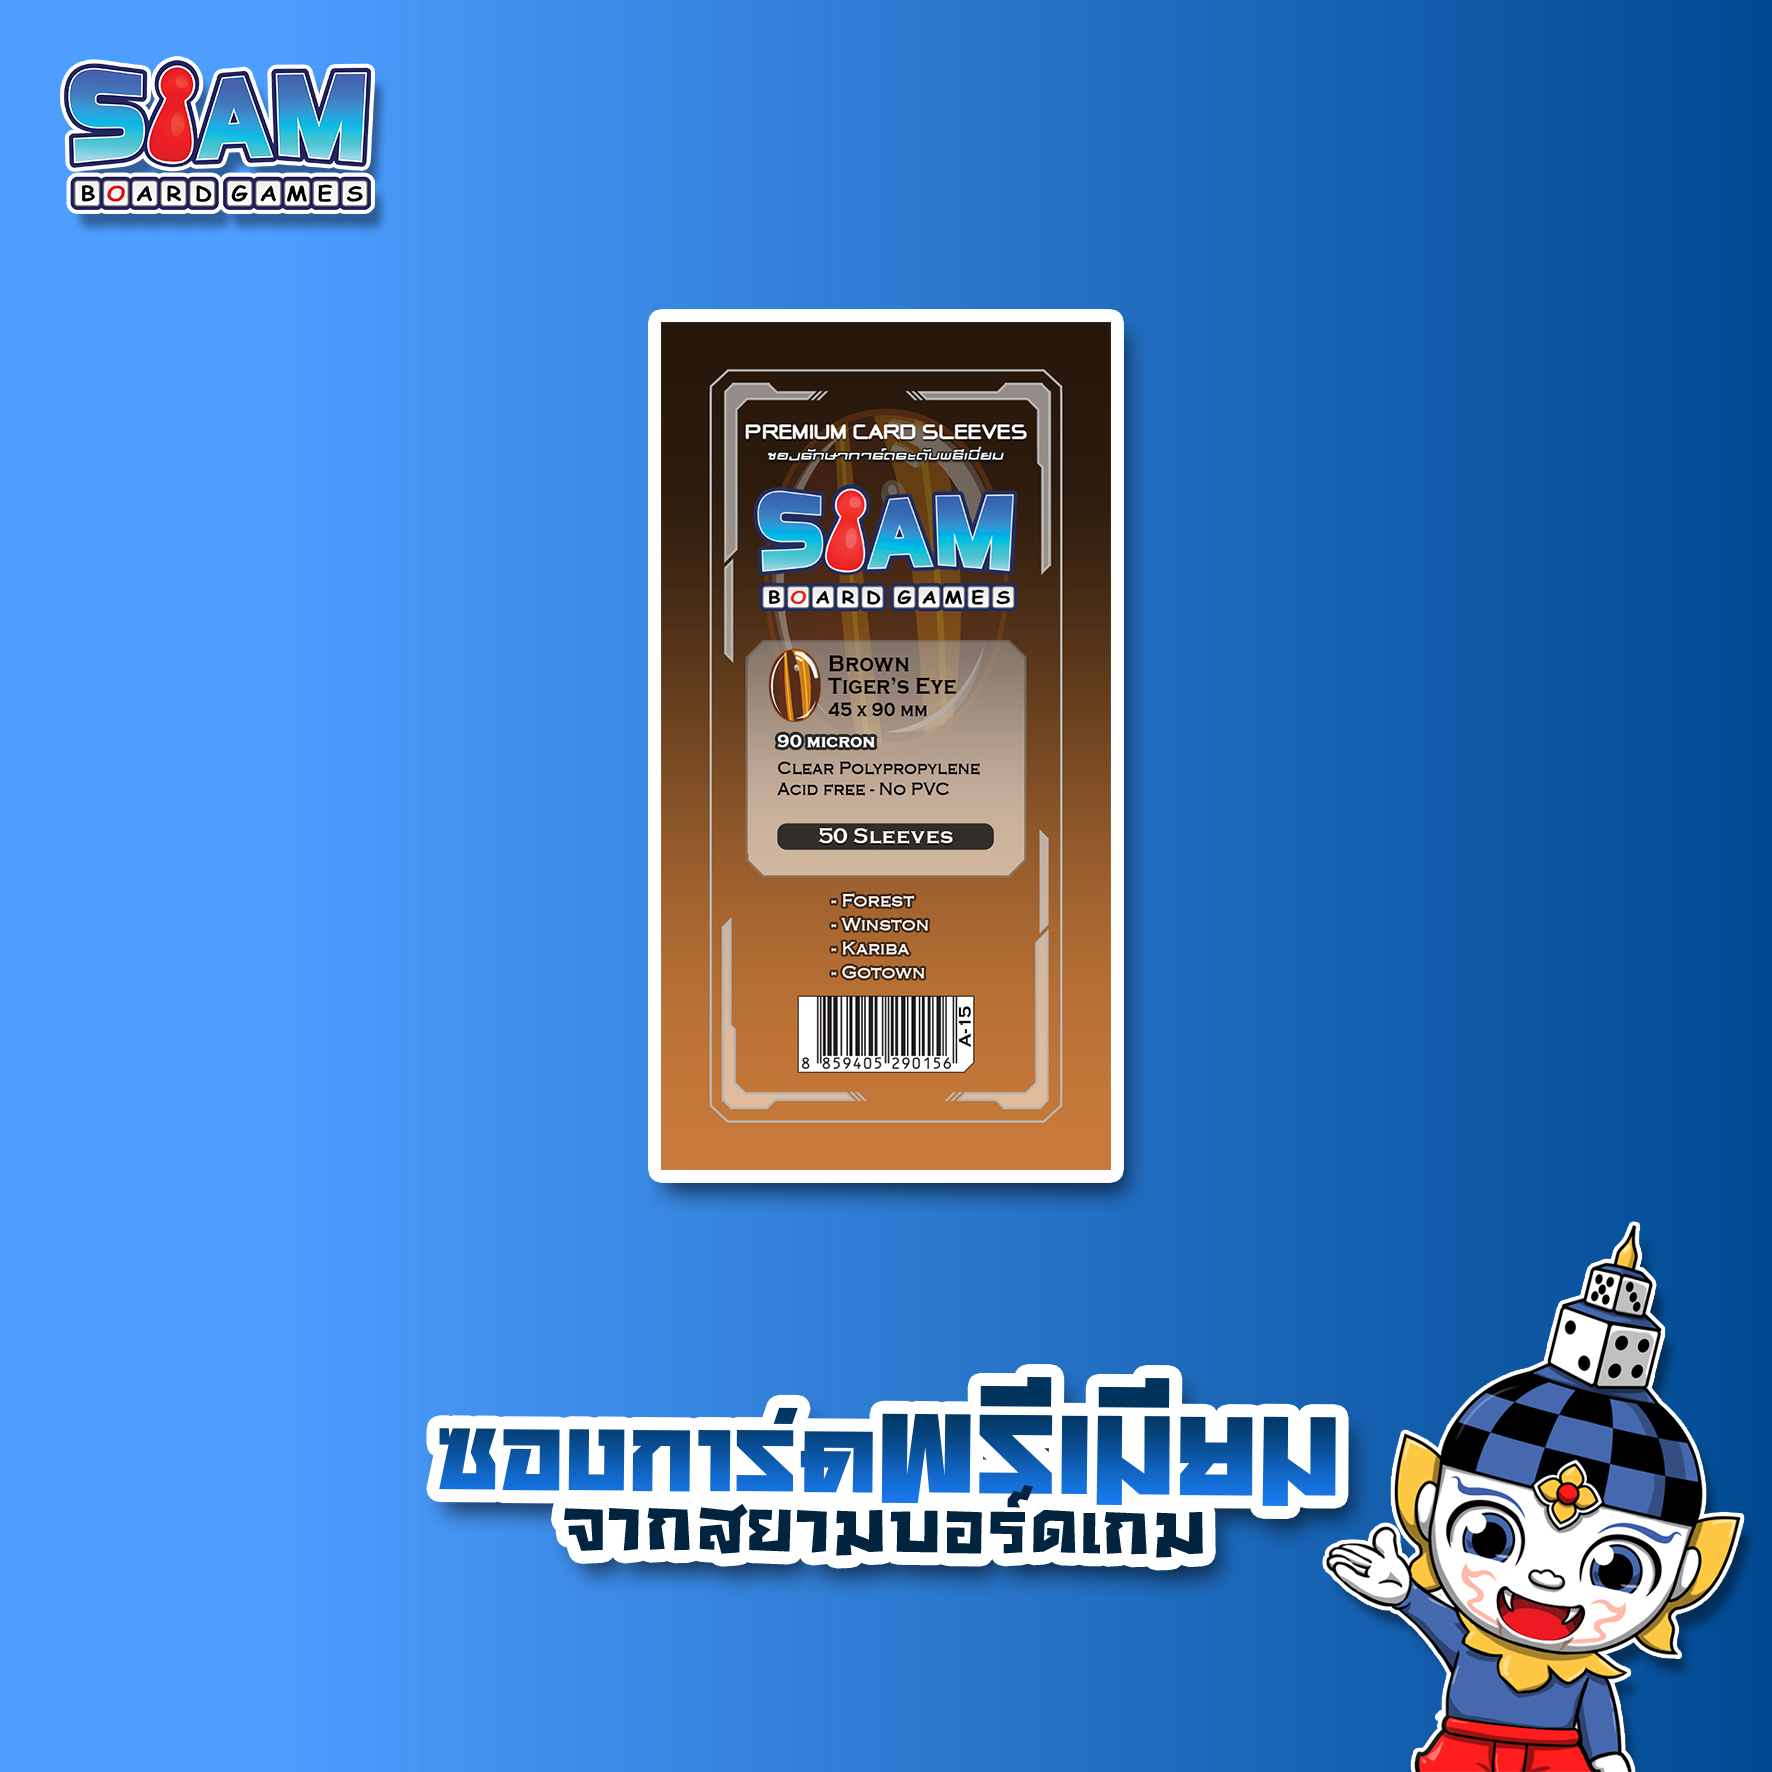 Siam Board Games : ซองใส่การ์ดพรีเมียม 90 ไมครอน ขนาด 45 x 90 mm Tiger's Eye Brown ซองใส่การ์ด SBG Sleeve